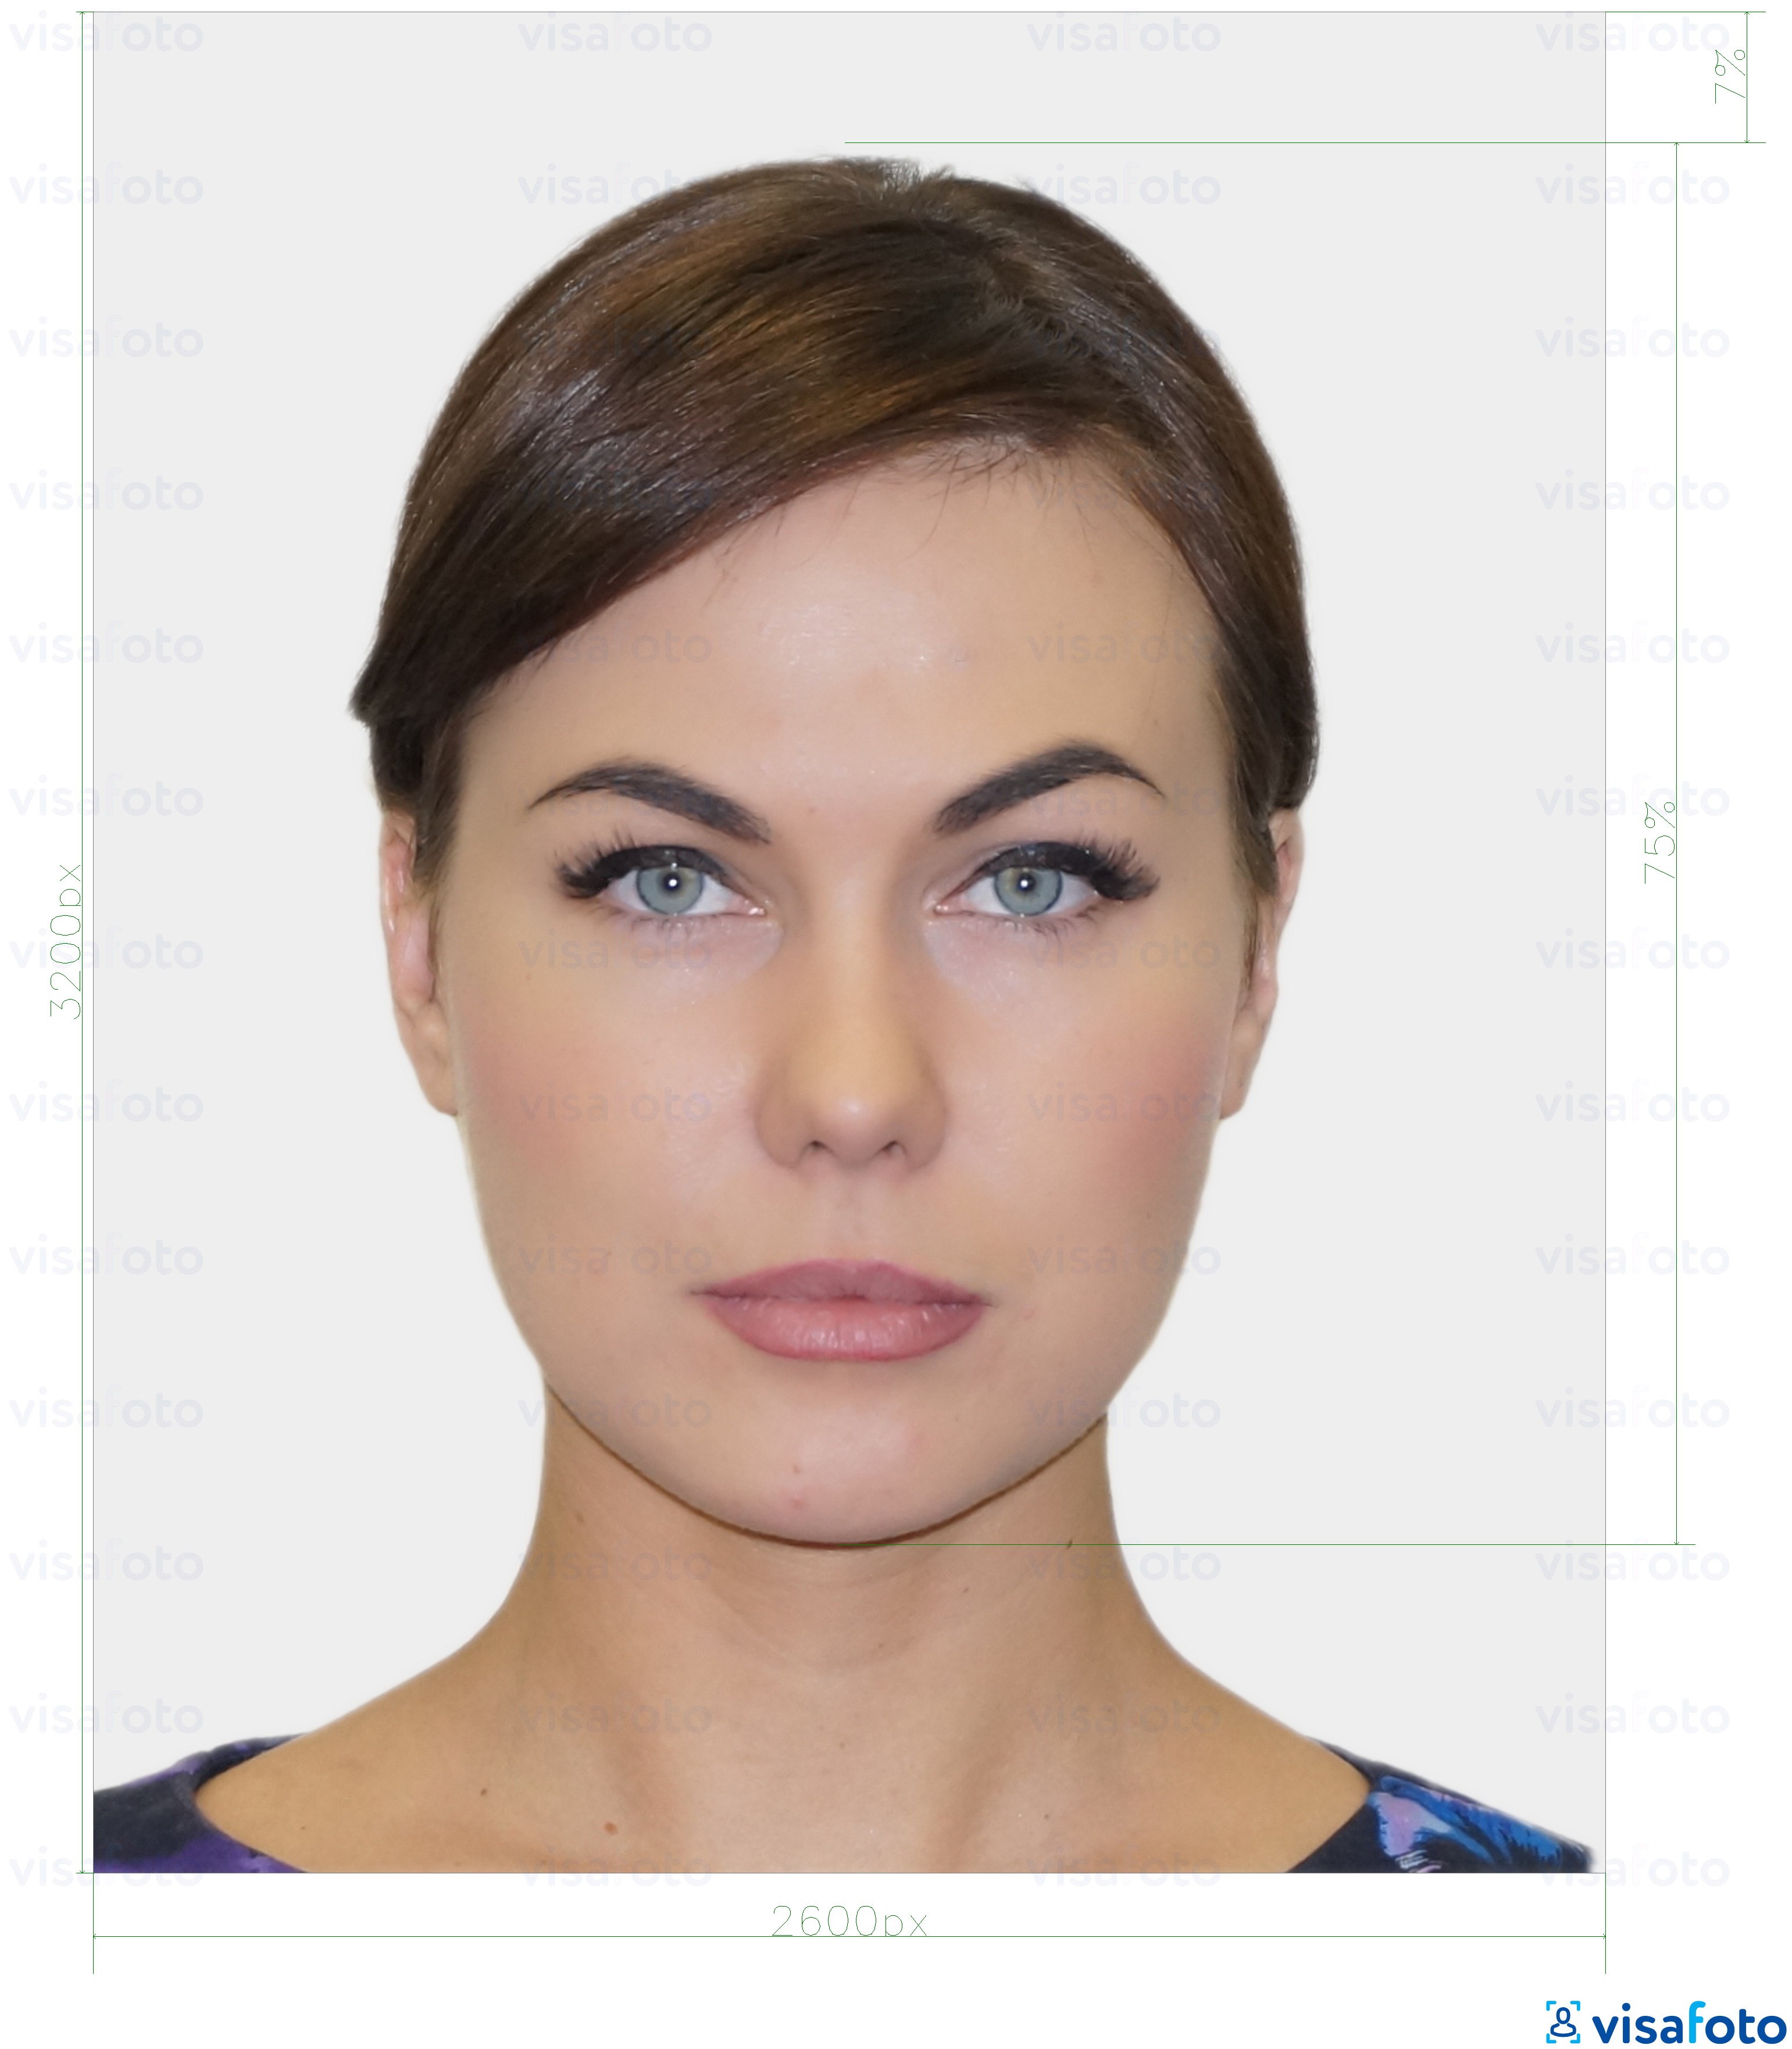 Primjer fotografije za Estonska rezidentna digitalna osobna iskaznica 1300x1600 piksela s točno određenom veličinom